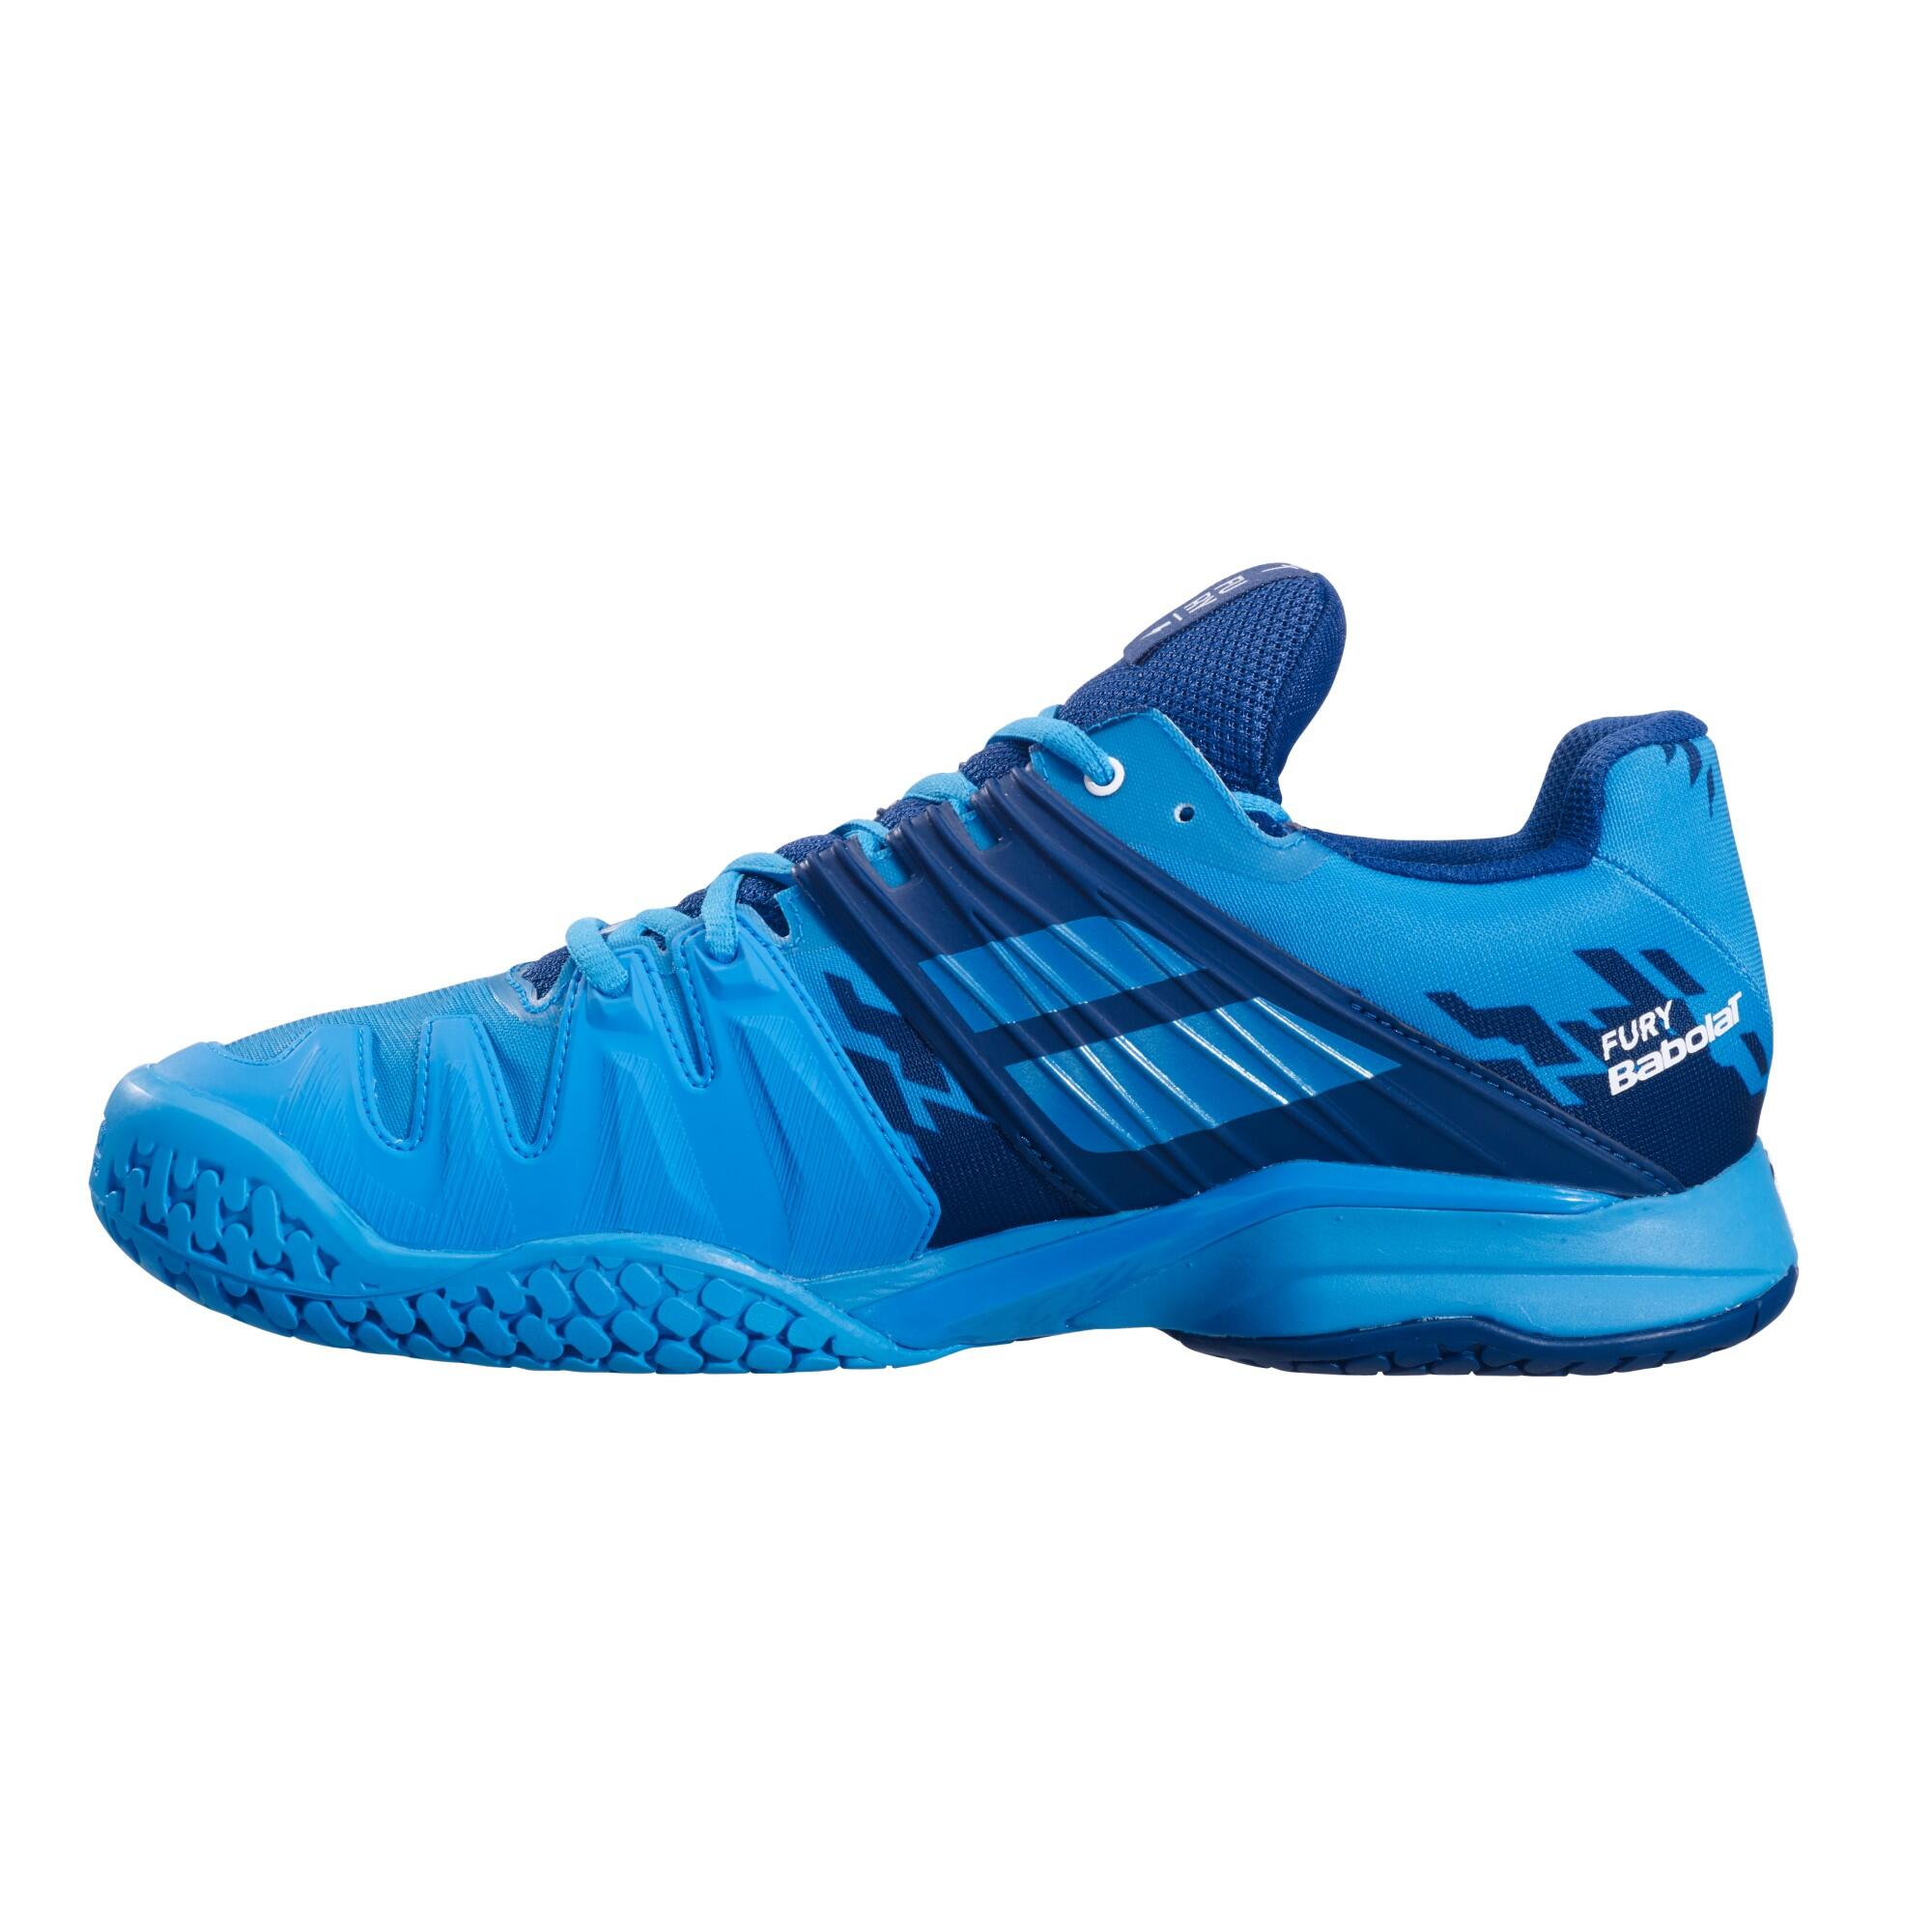 Adult Multicourt Tennis Shoes Propulse Fury - Blue 2/2